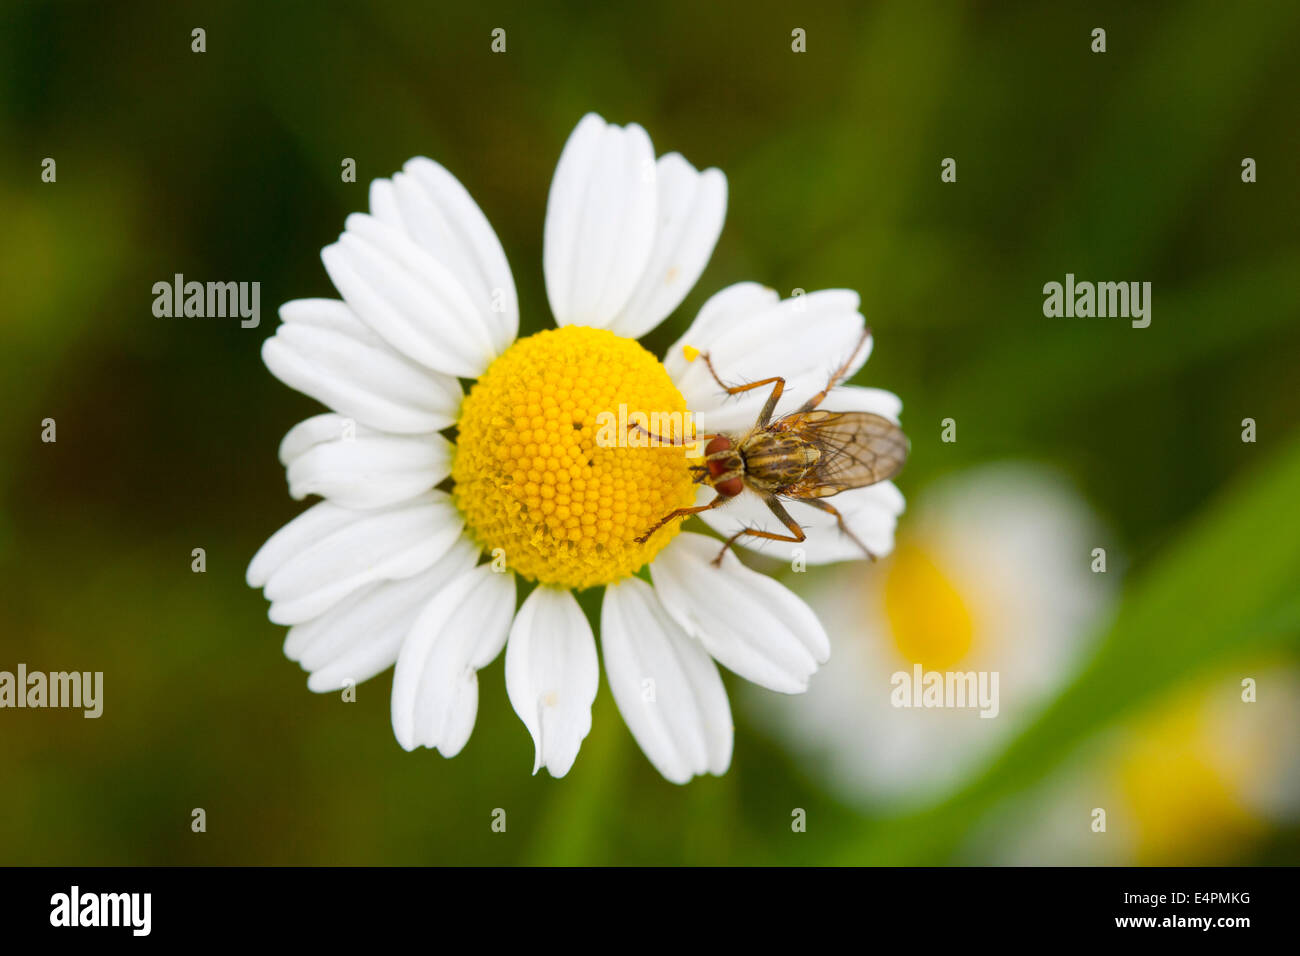 Fliege auf einer Blüte Foto de stock